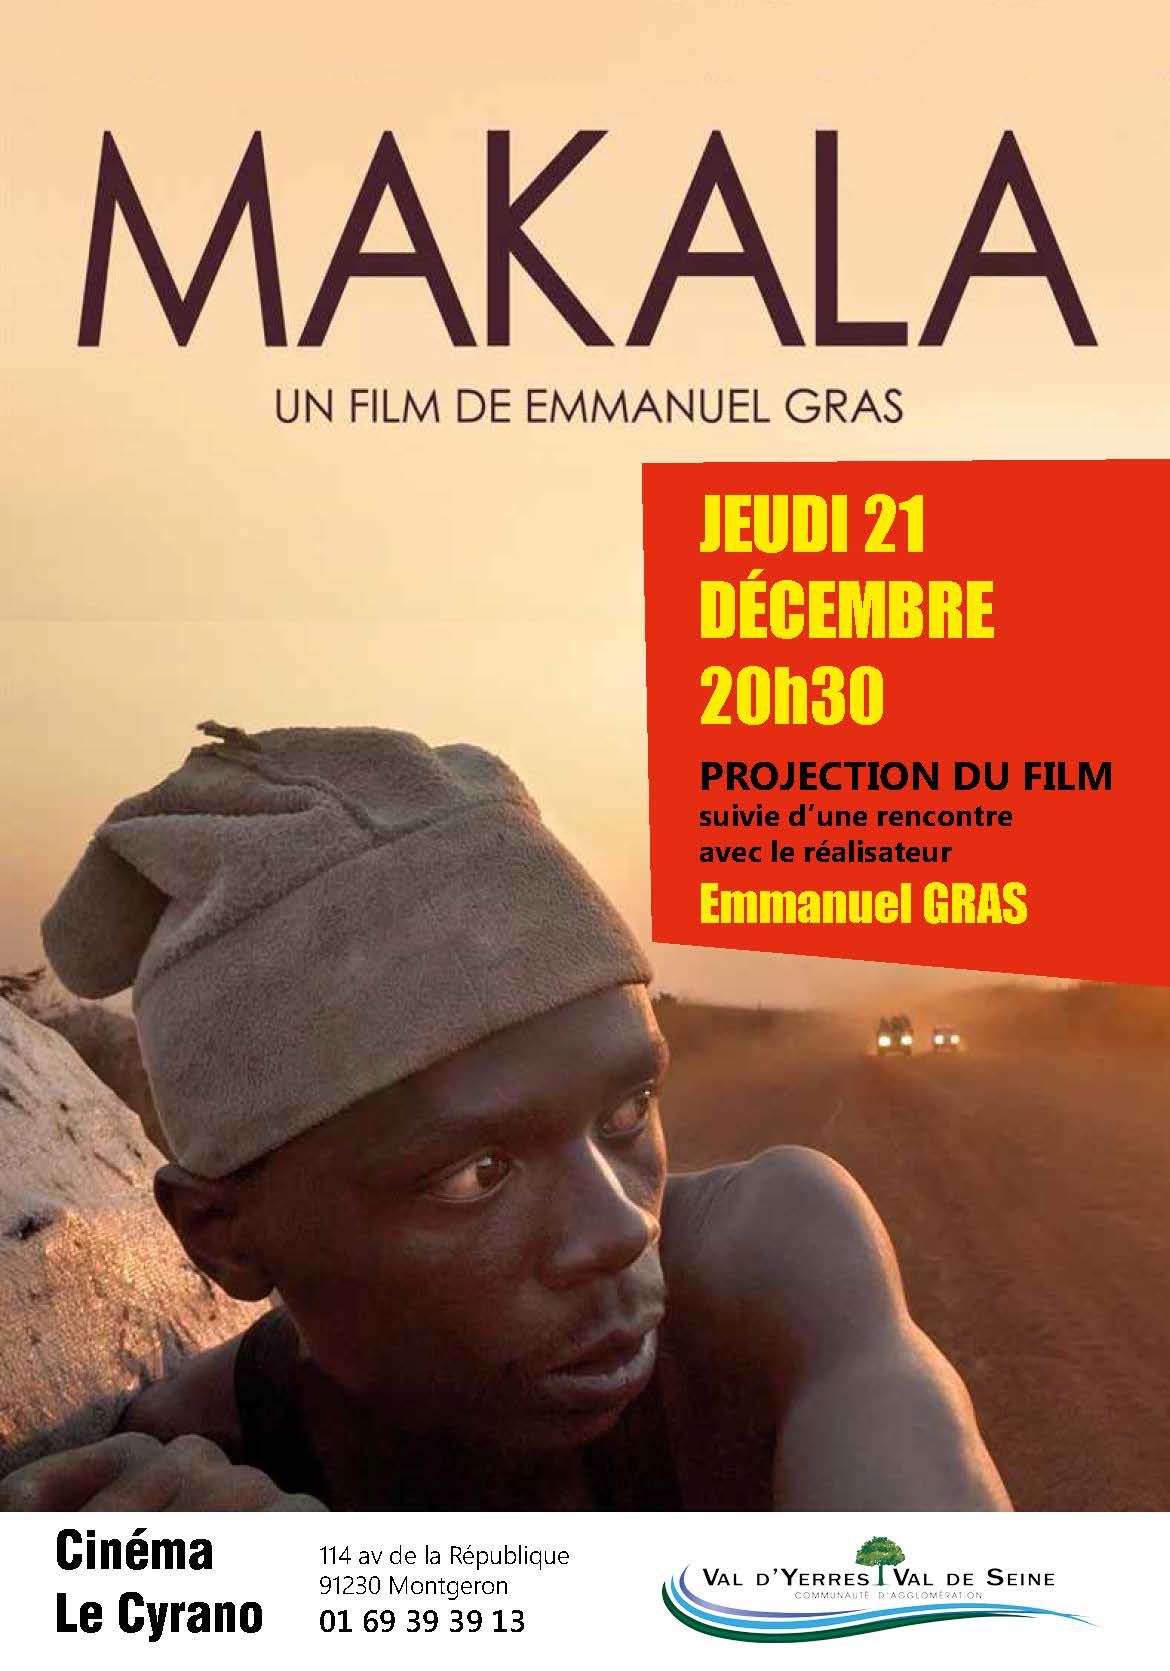 Soirée Cinéma : projection du film « Makala » suivie d'une rencontre avec le réalisateur Emmanuel Gras : jeudi 21 décembre